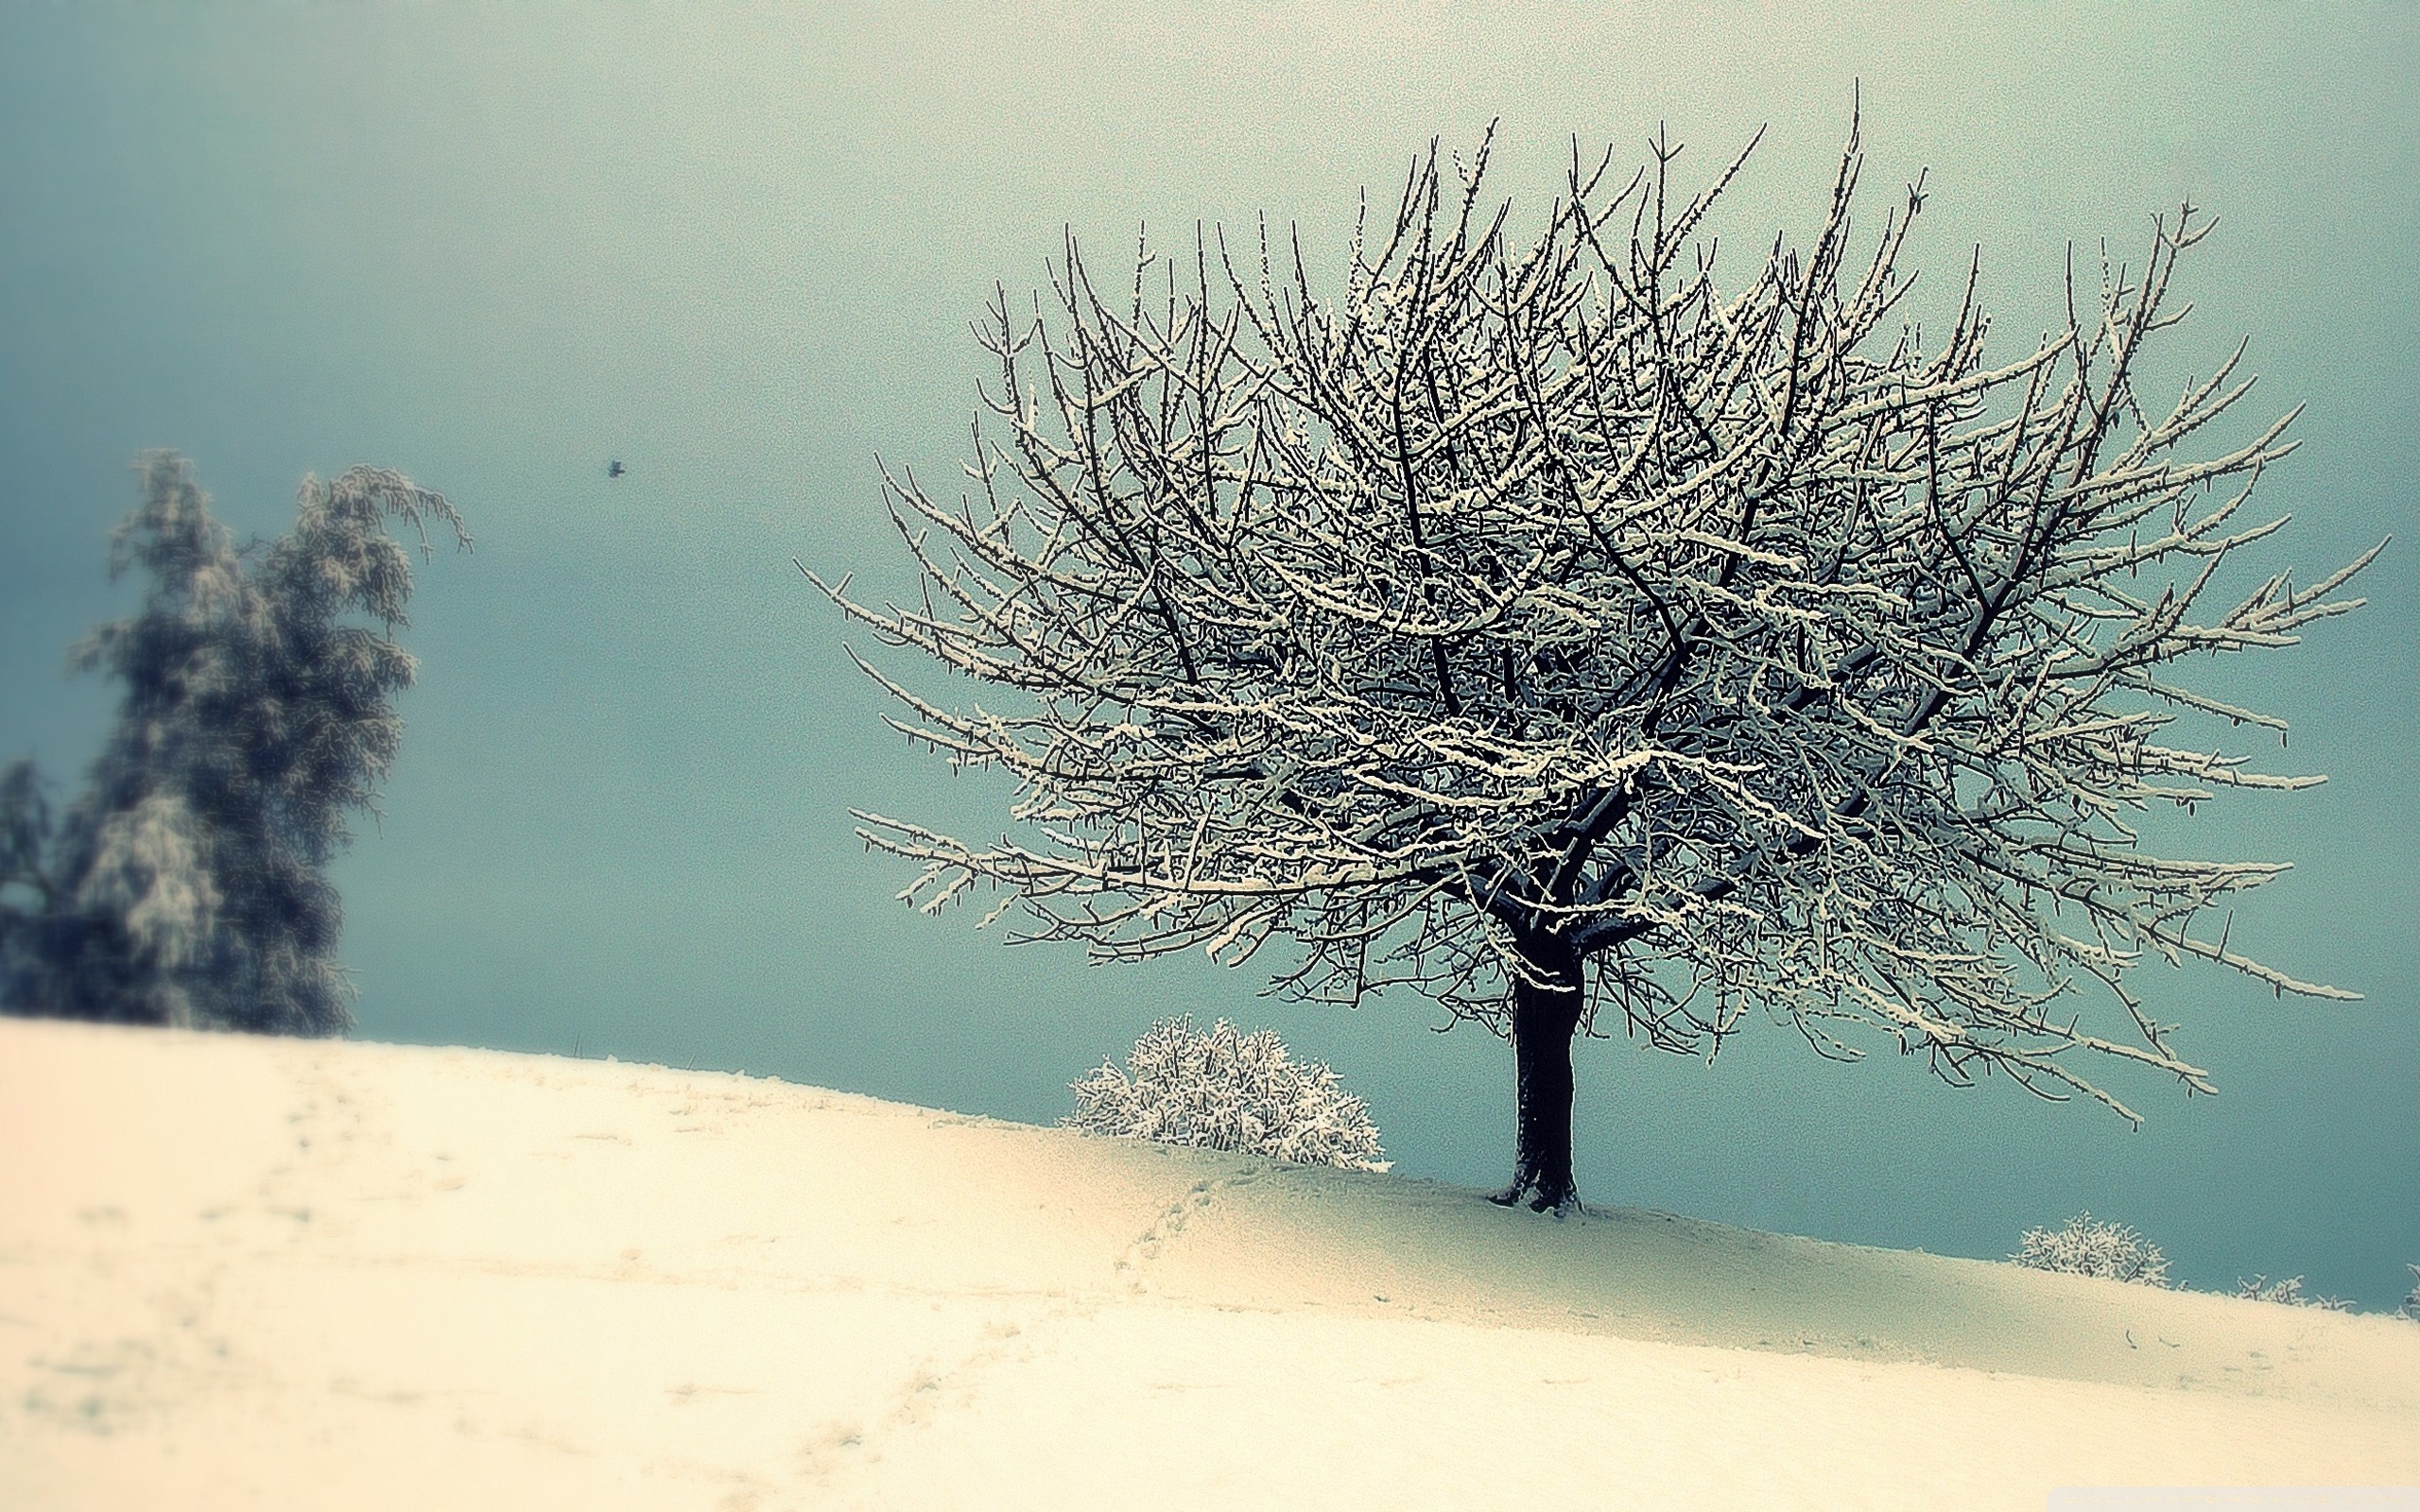 Скачать обои бесплатно Зима, Снег, Дерево, Винтаж, Земля/природа картинка на рабочий стол ПК